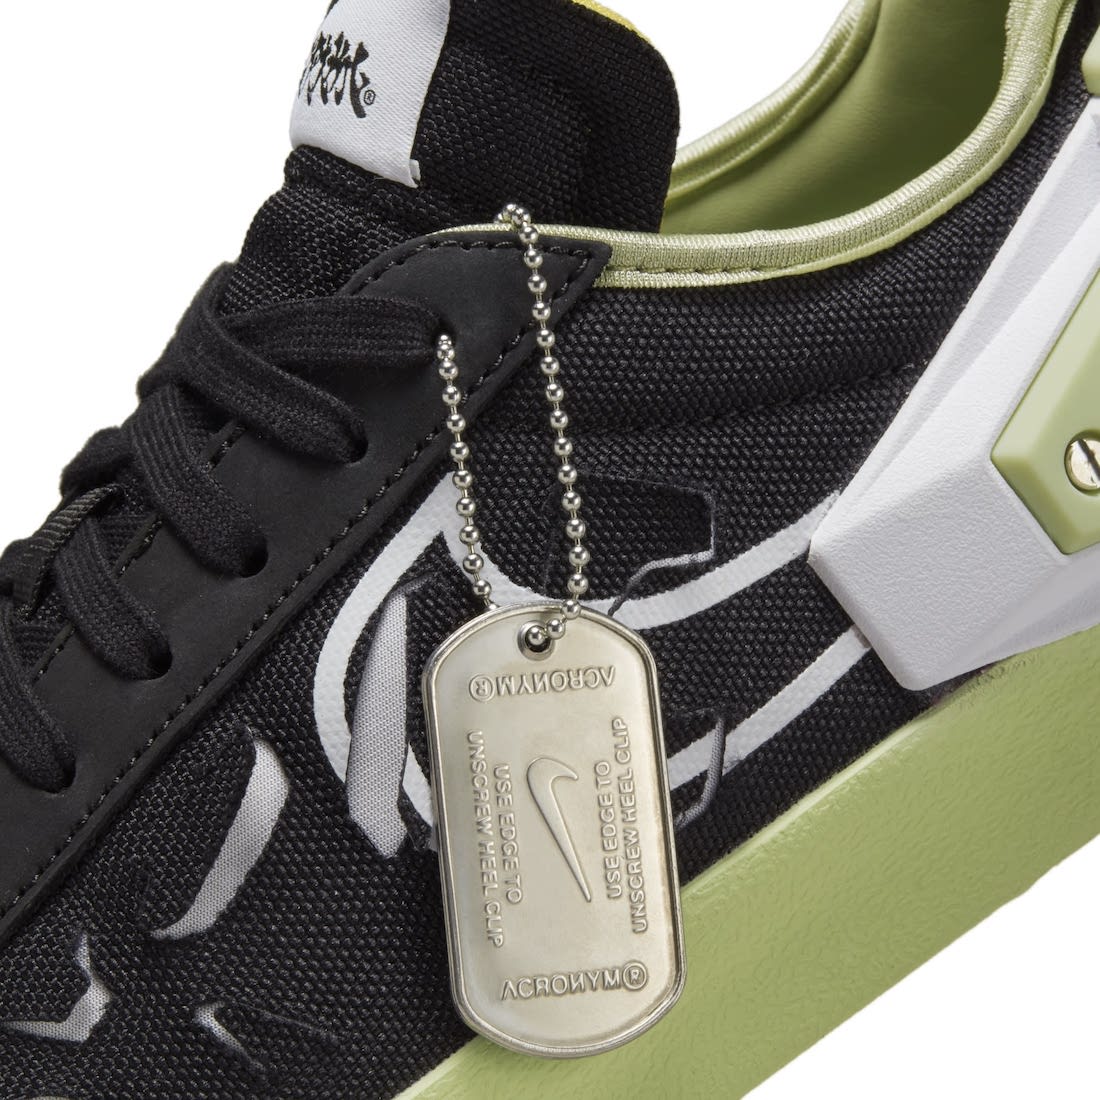 Acronym x Nike Blazer Low Black DN2067-001 Release Date